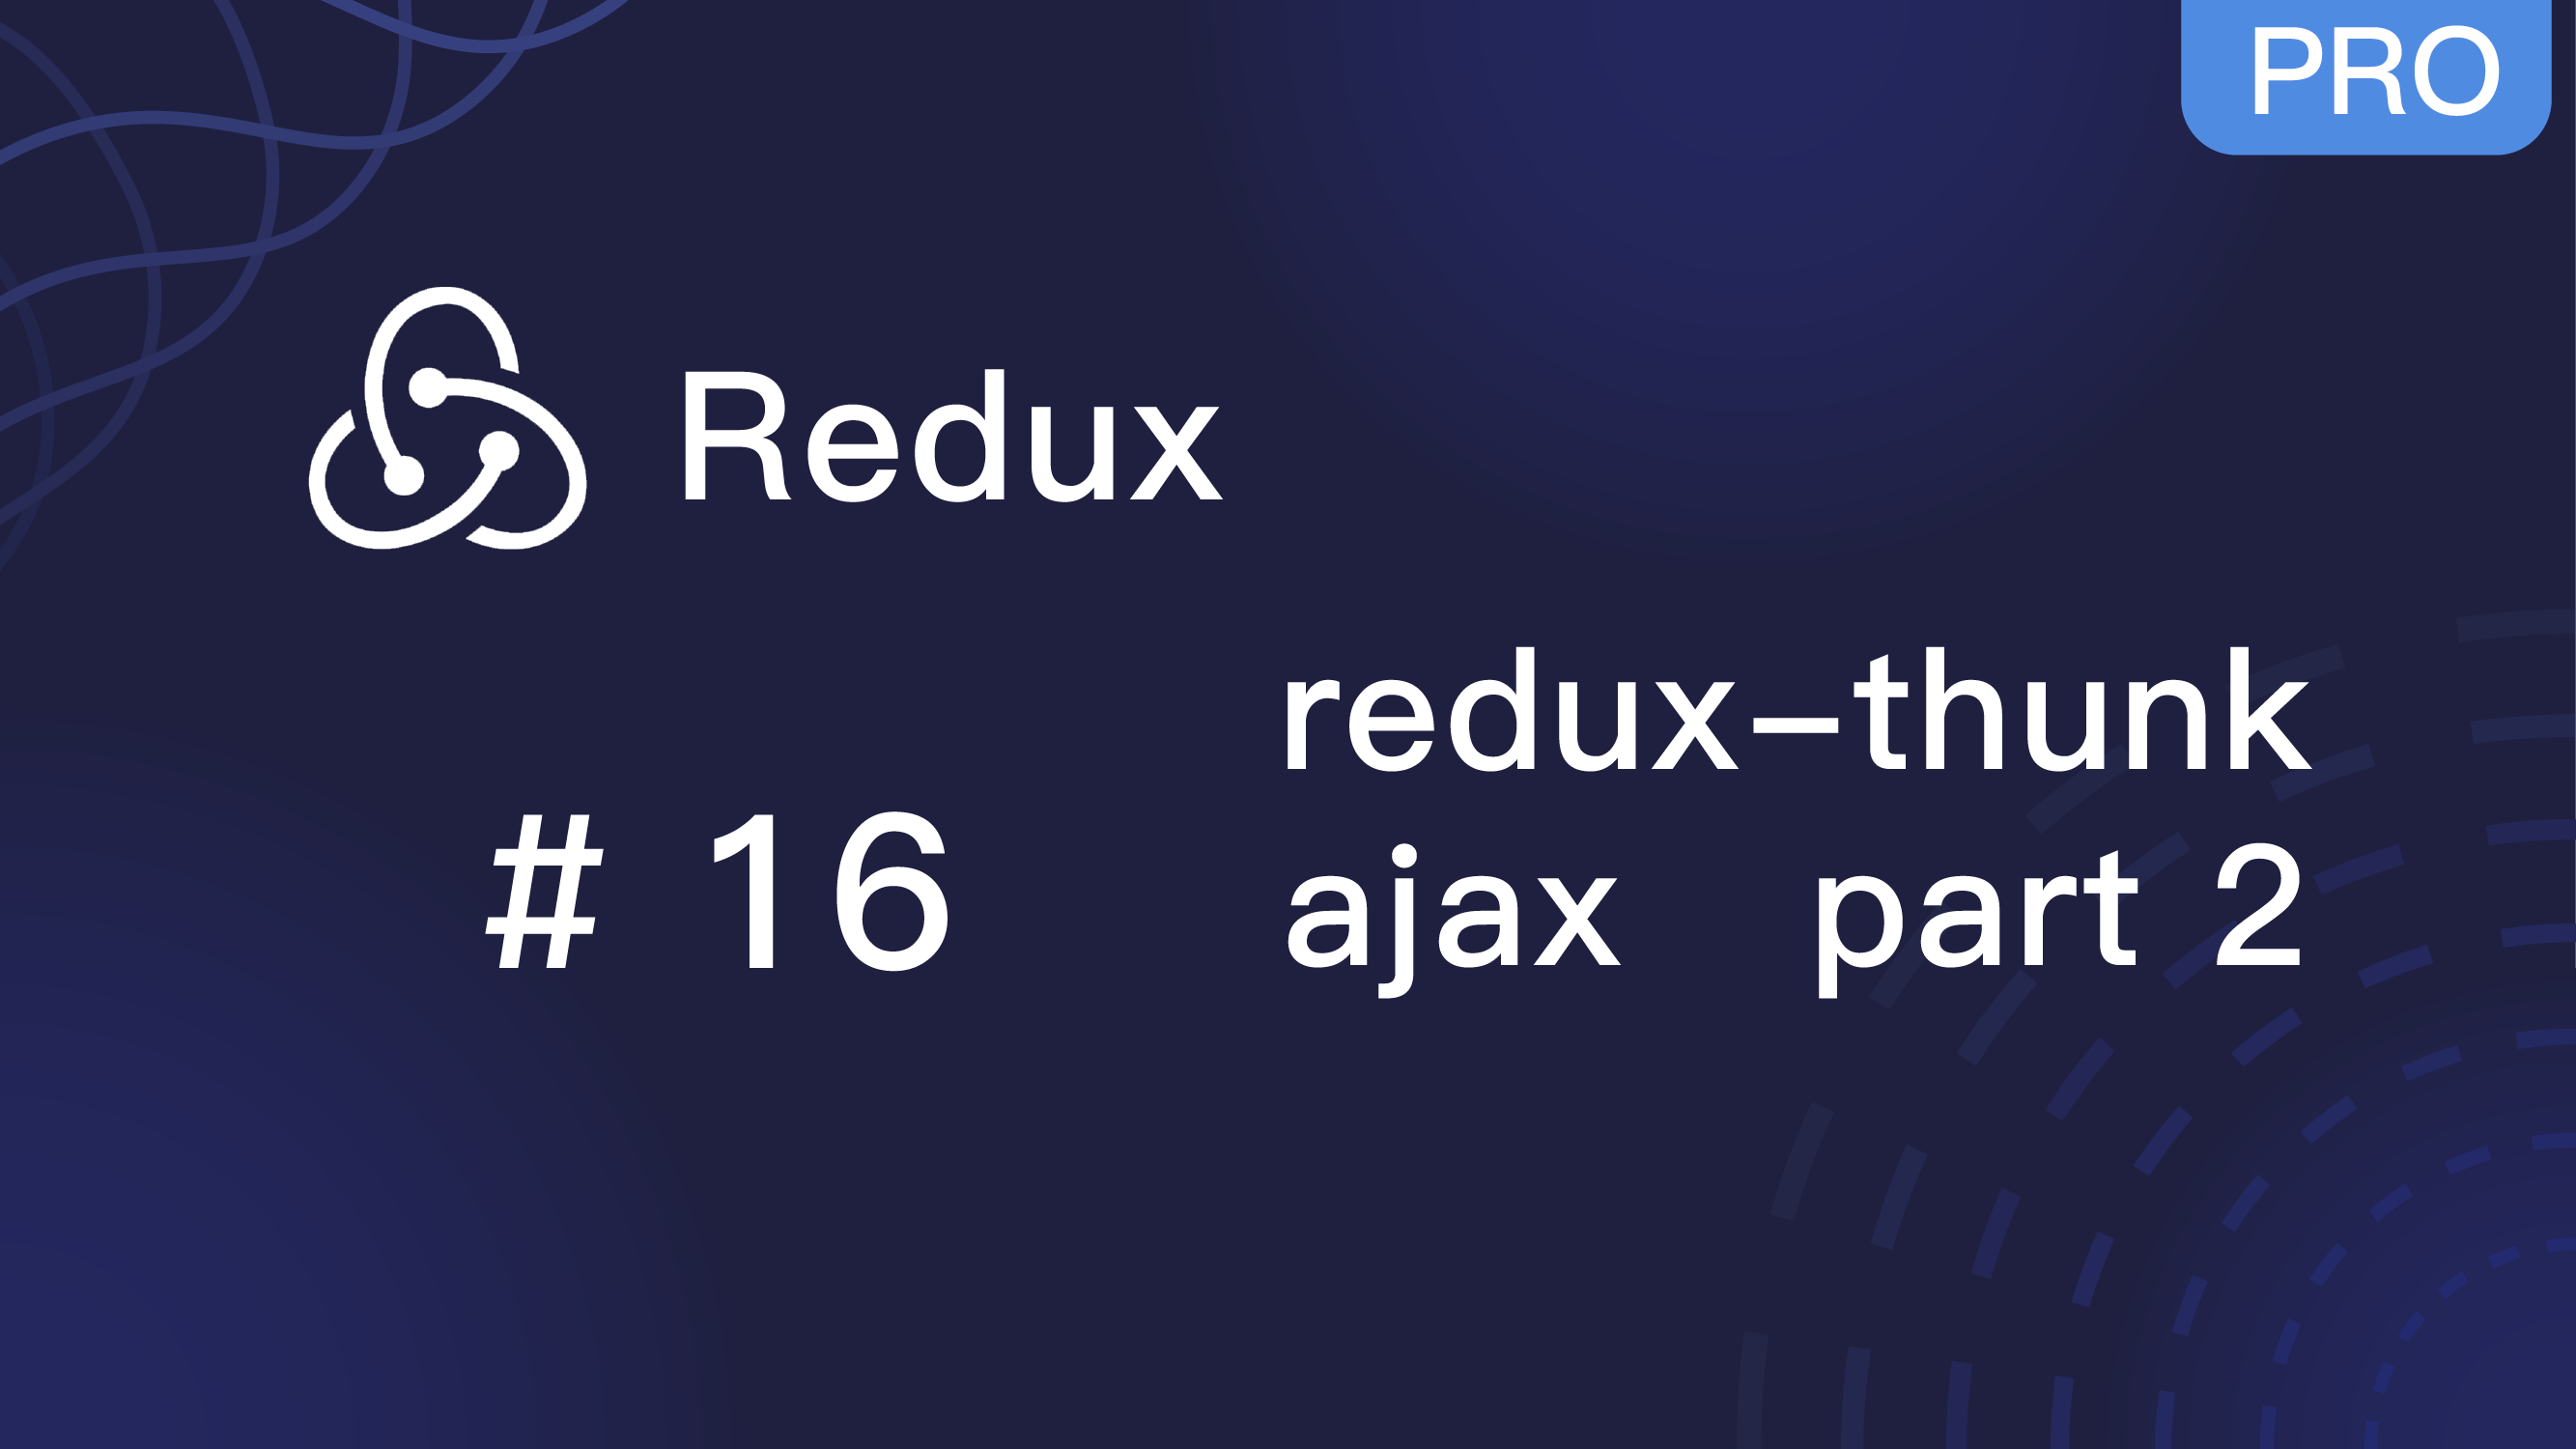 Redux 入门教程 #16 redux-thunk 实践发送 ajax 请求 part 2